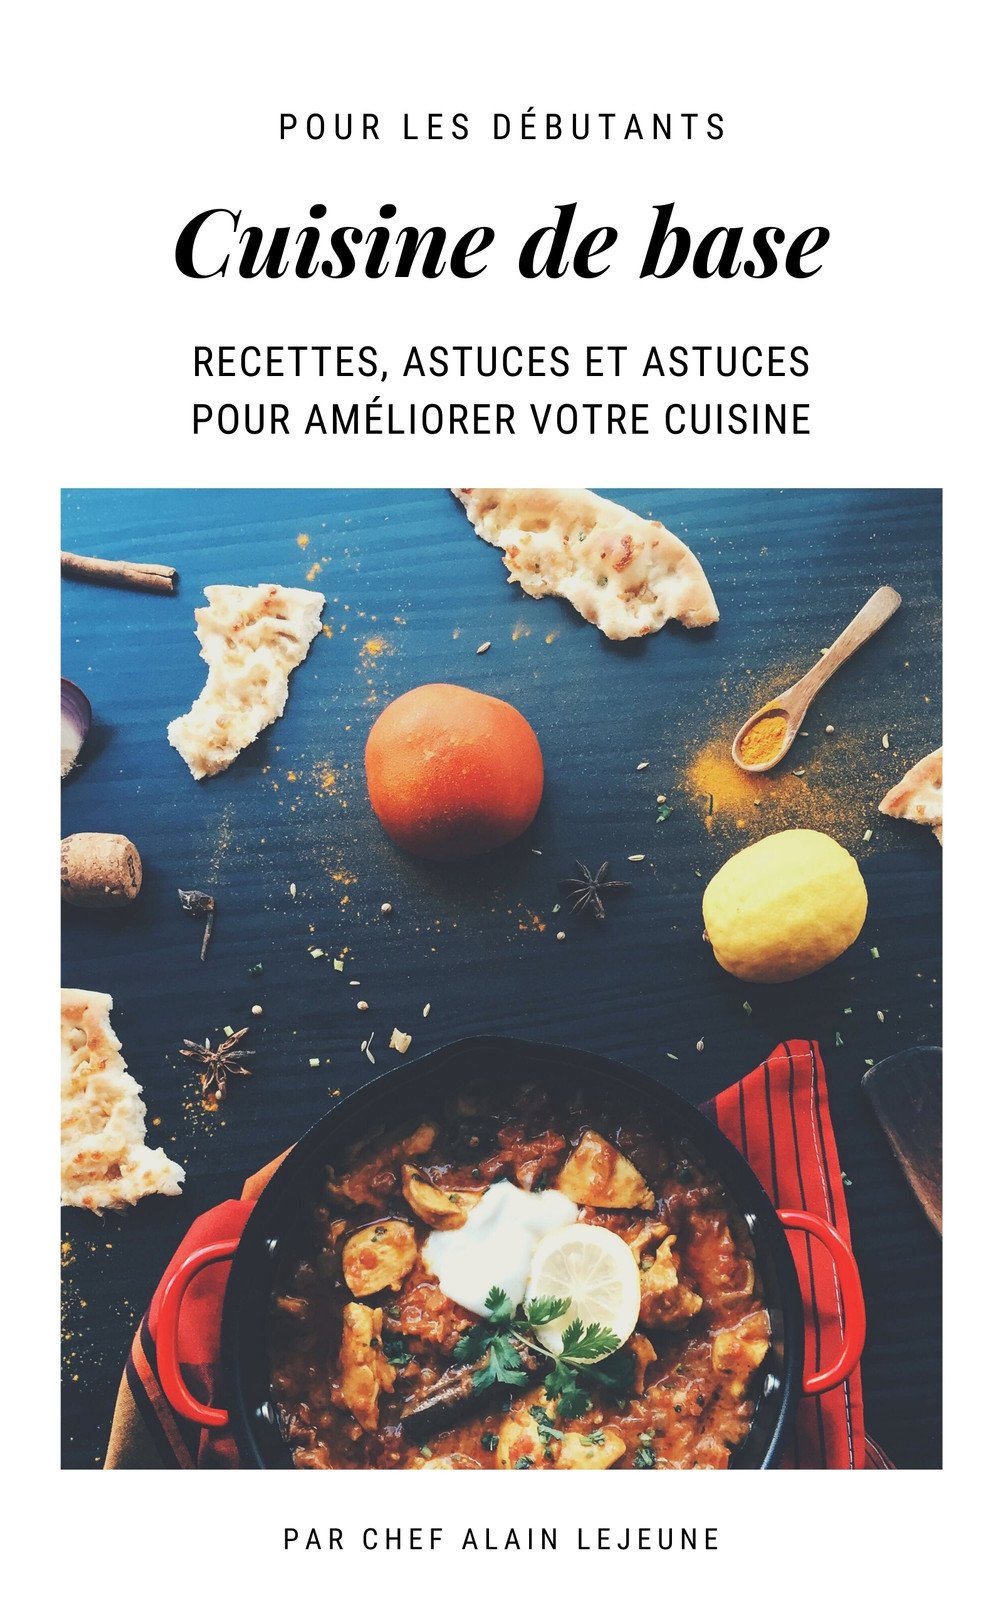 https://marketplace.canva.com/EAEuM4mV1QA/1/0/1003w/canva-blanc-minimaliste-livre-de-cuisine-livre-couverture-Kuj6EnpffLw.jpg